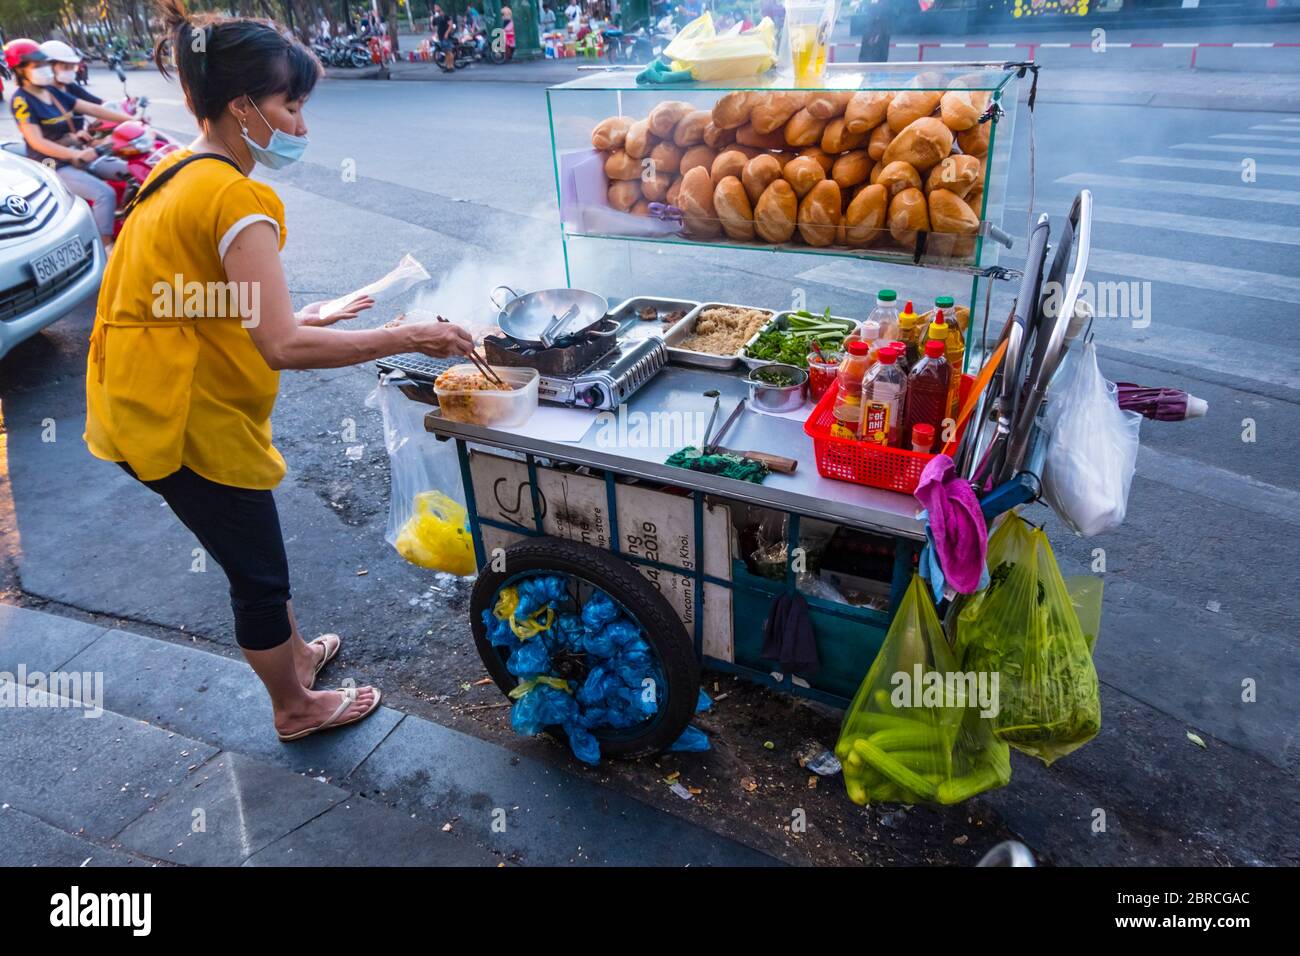 Vendeur de nourriture de rue, fabrication de banh mi, baguettes, Ho Chi Minh ville, Vietnam, Asie Banque D'Images